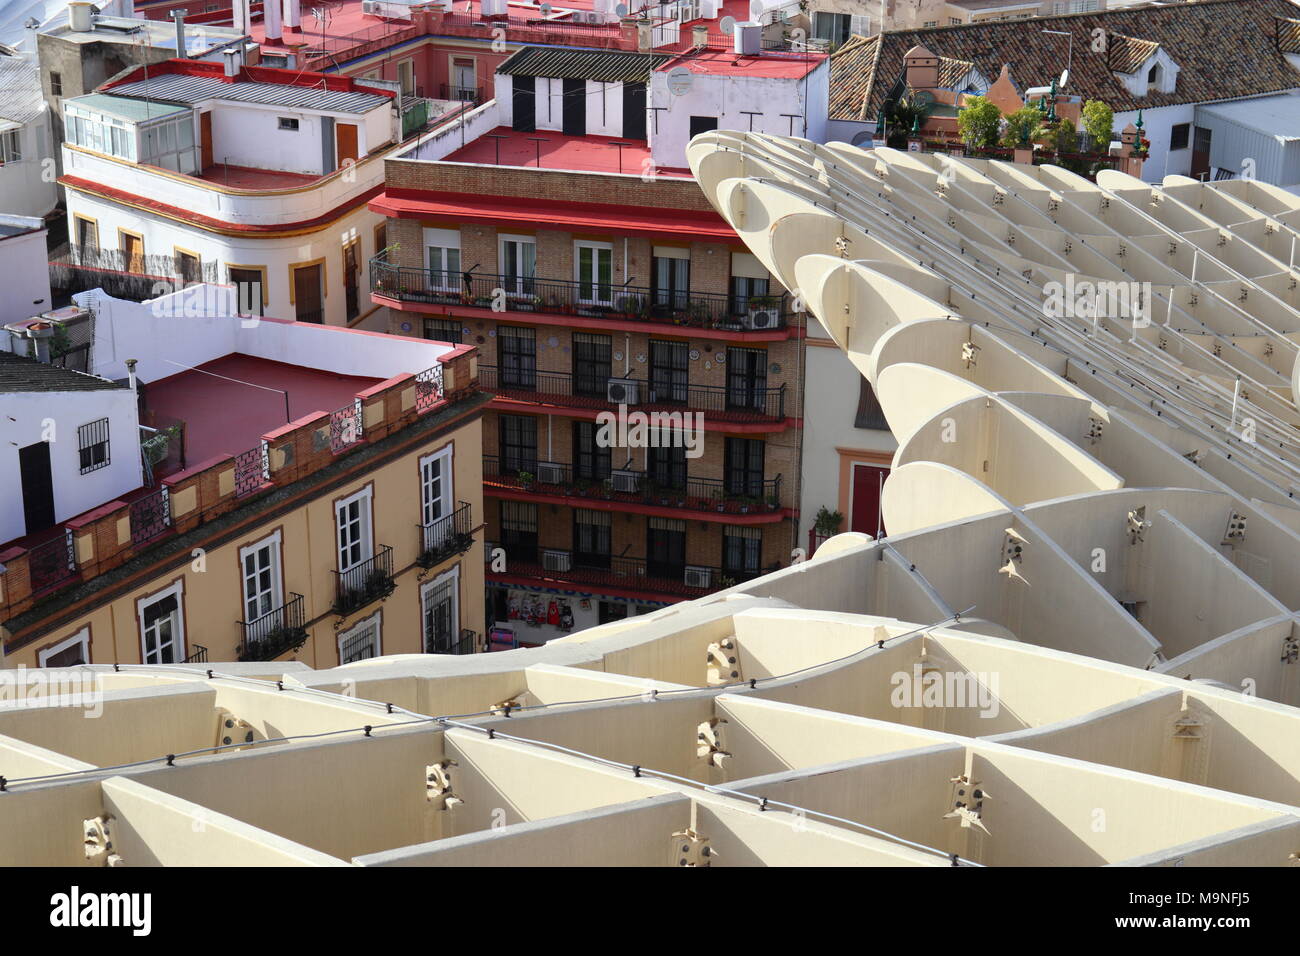 Metropol Parasol, moderne Architektur mit einer Altstadt, gebogene Form, Blick auf die Dächer, Sevilla, Andalusien, Spanien, Europa zusammen Stockfoto